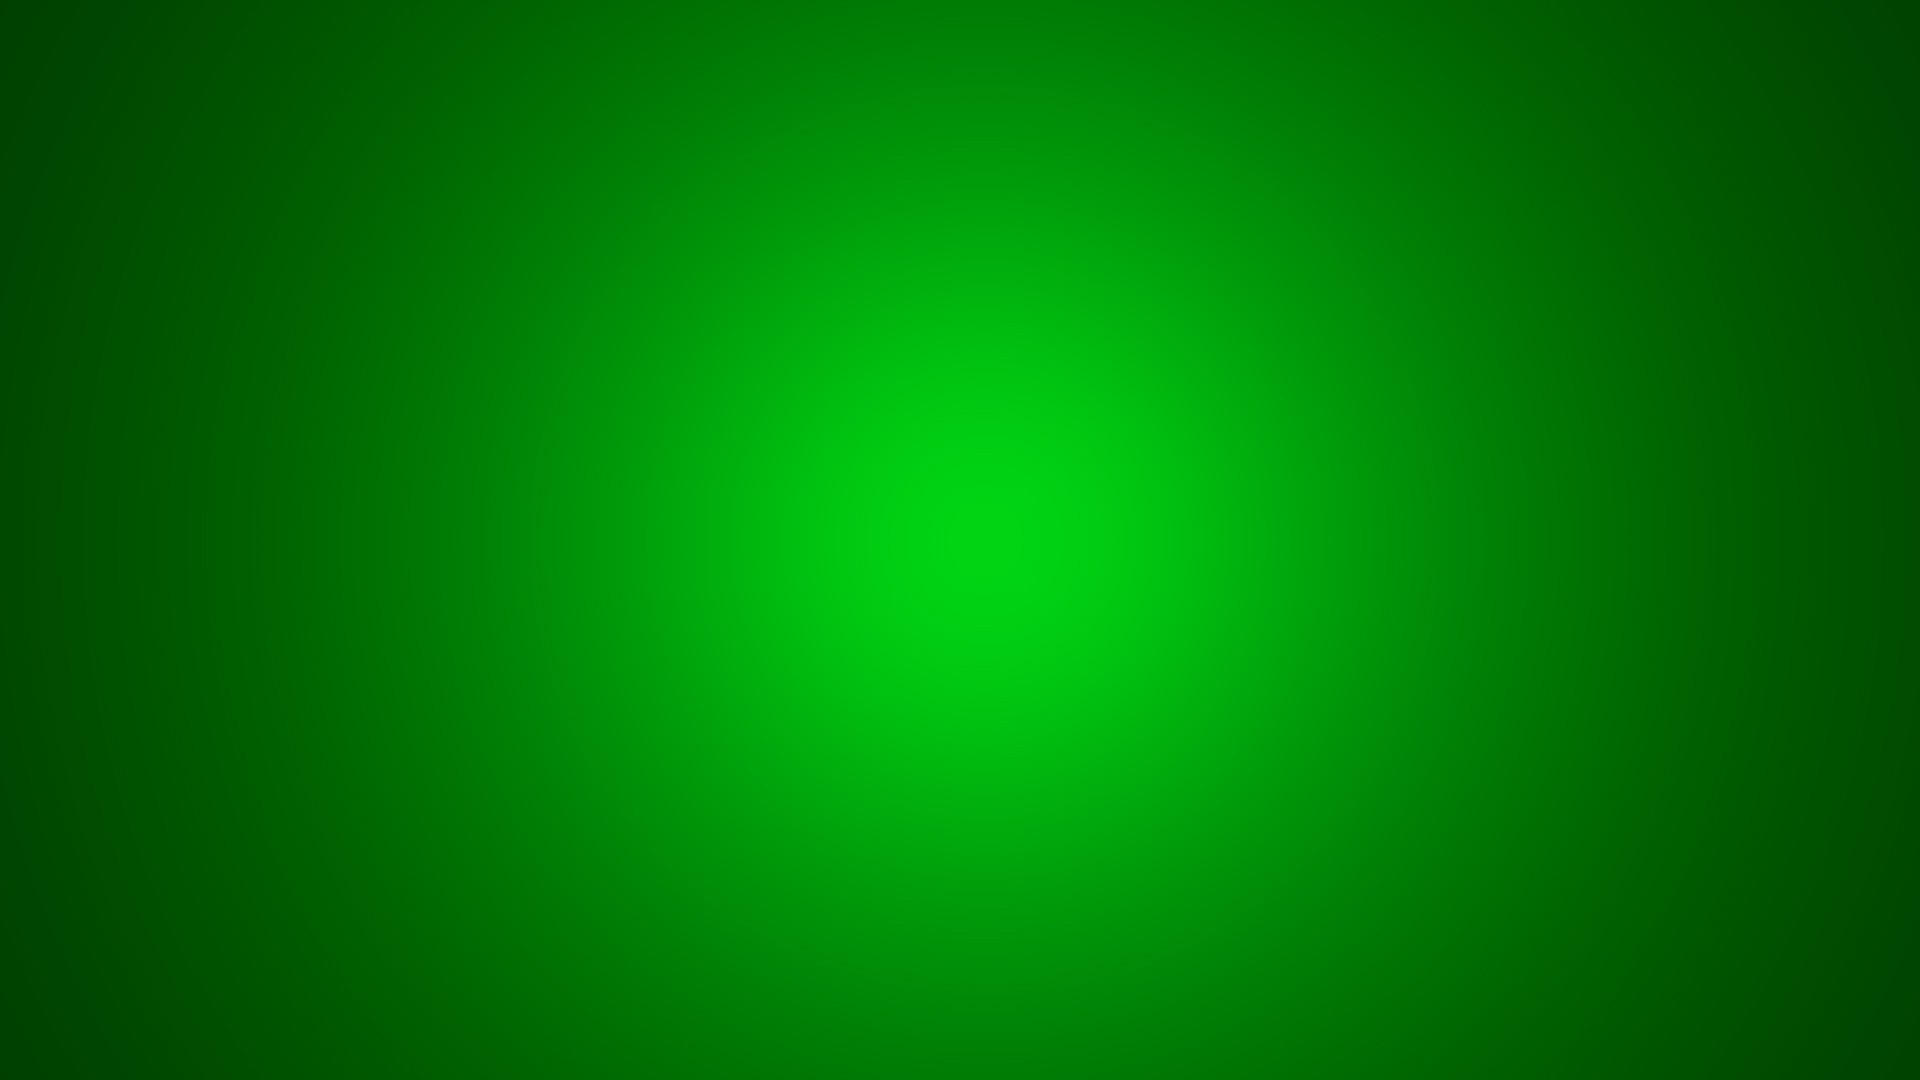 Plain Wallpapers HD green spot light